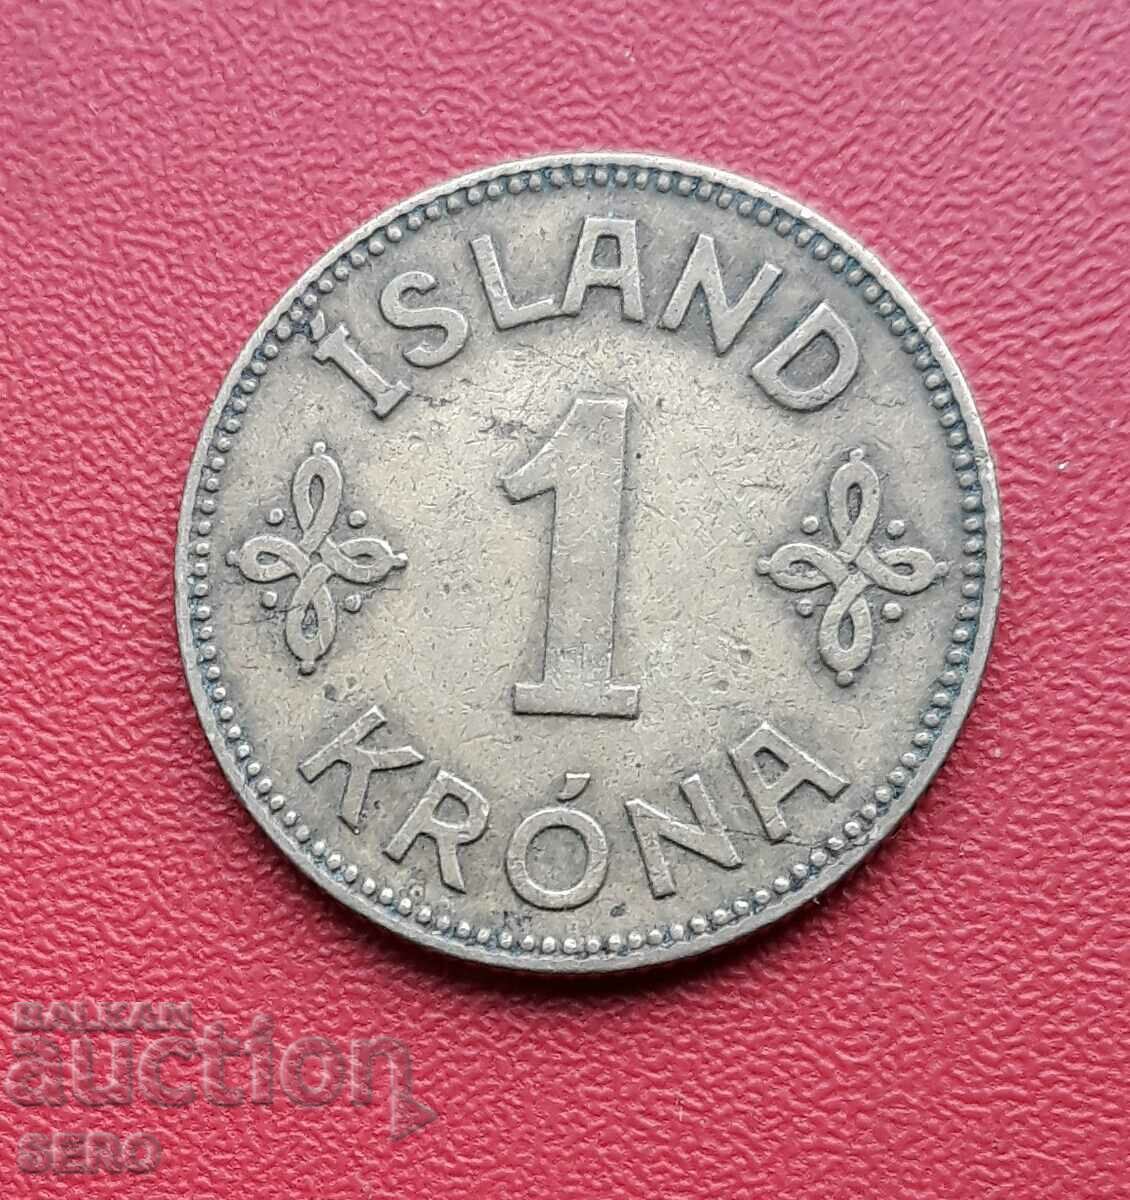 Ισλανδία-1 κορώνα 1929-σπάνια κυκλοφορία 154 x. όχι